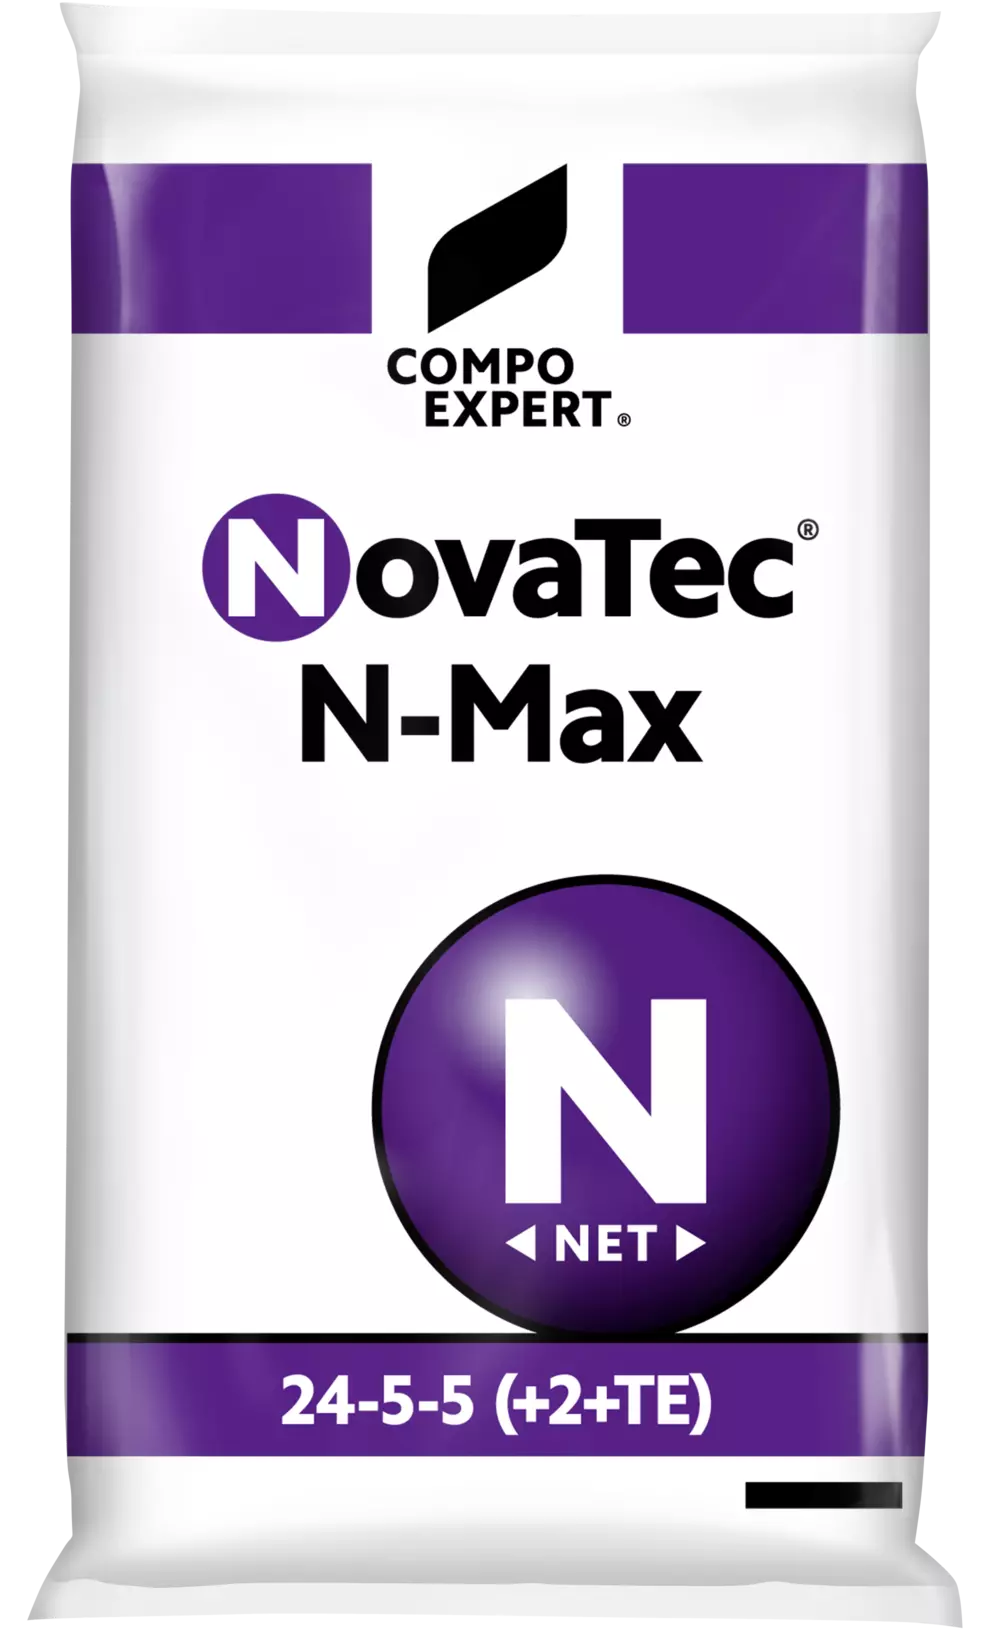 3D NovaTec N-Max